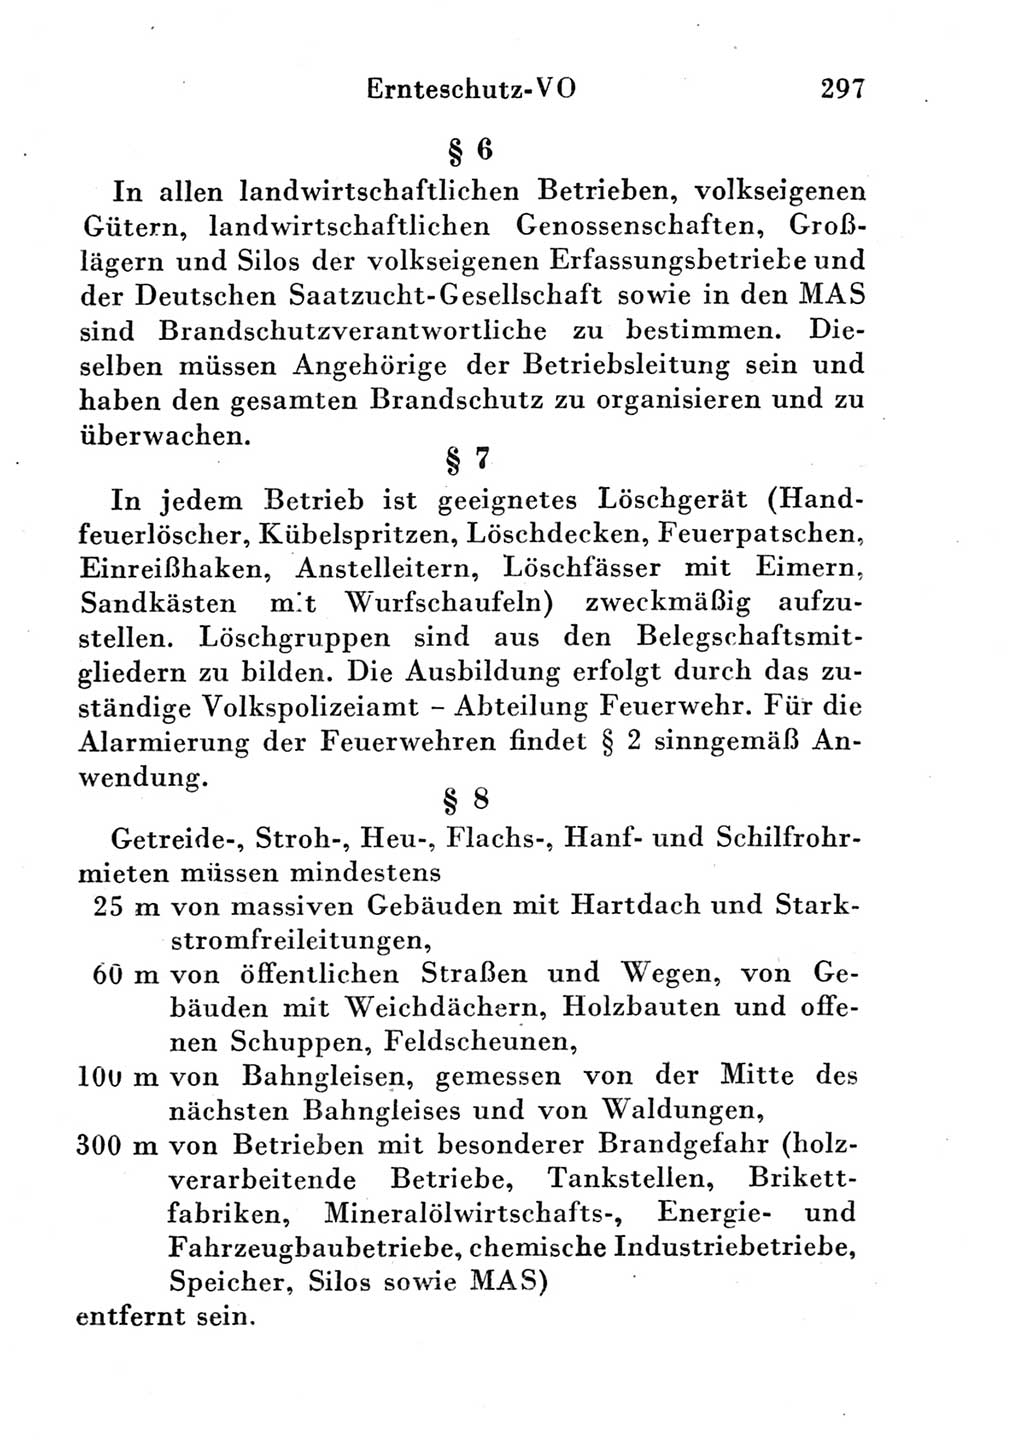 Strafgesetzbuch (StGB) und andere Strafgesetze [Deutsche Demokratische Republik (DDR)] 1951, Seite 297 (StGB Strafges. DDR 1951, S. 297)